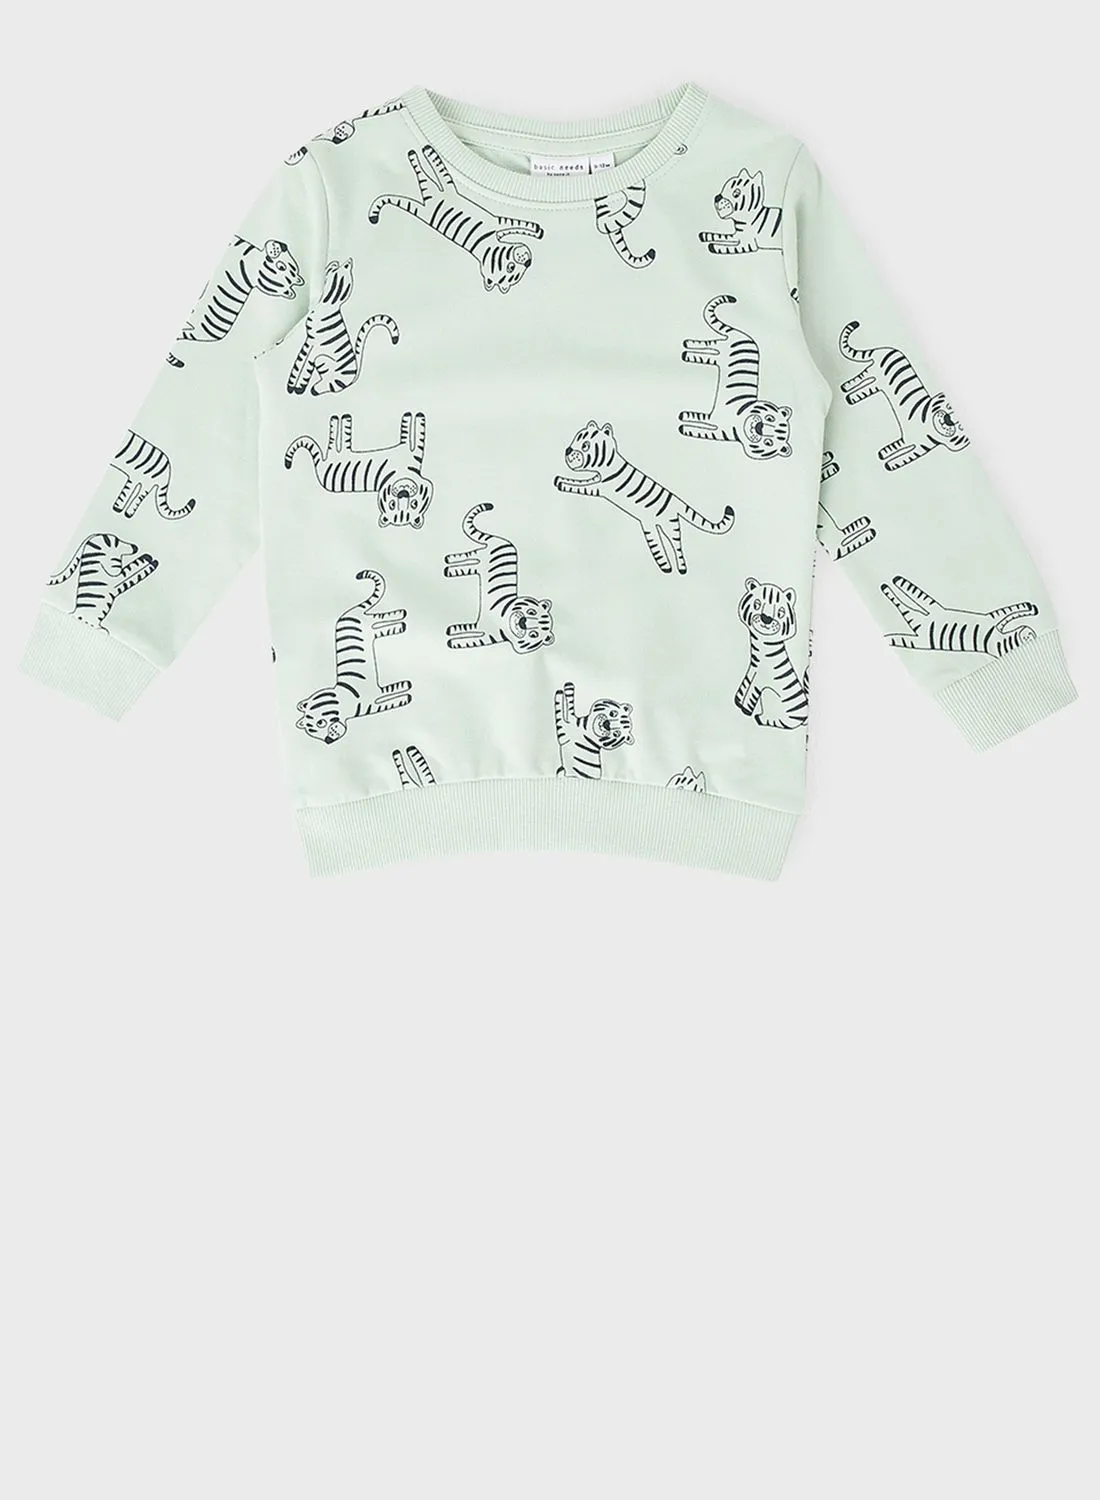 NAME IT Kids Tiger Print Sweatshirt